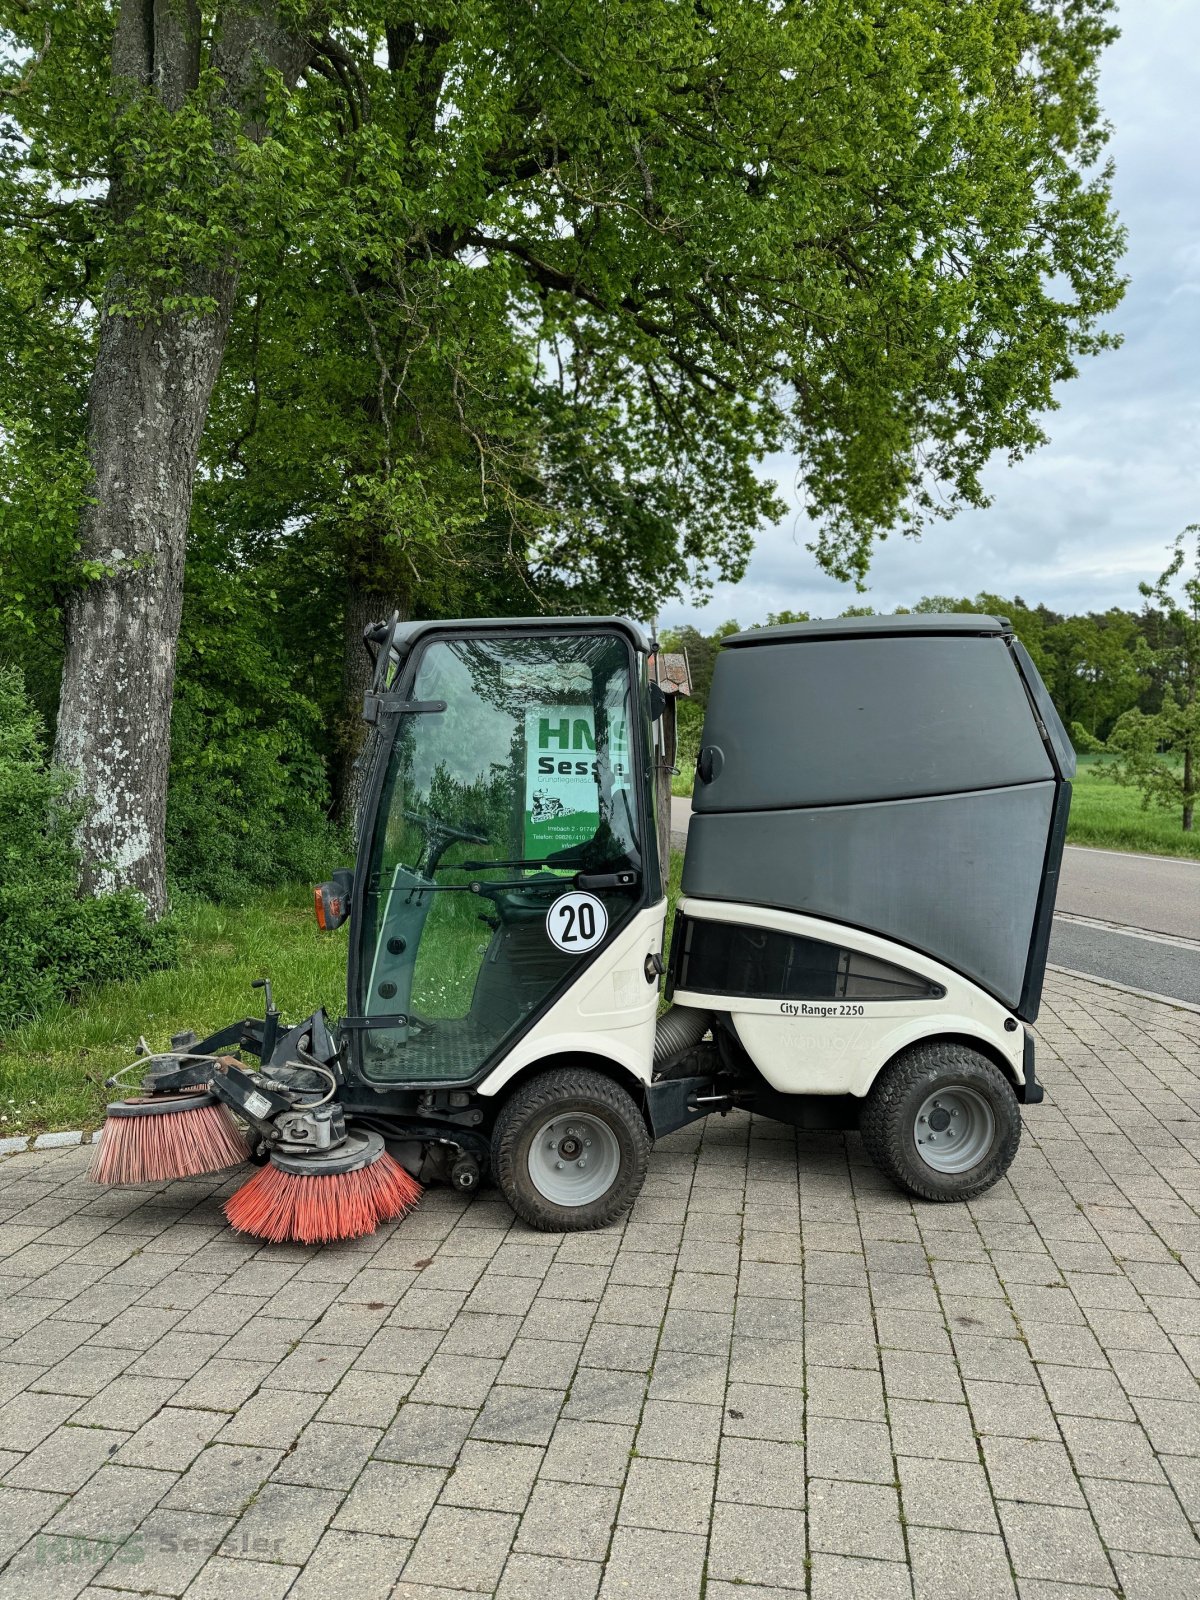 Sonstige Gartentechnik & Kommunaltechnik des Typs Egholm City Ranger 2250, Gebrauchtmaschine in Weidenbach (Bild 1)